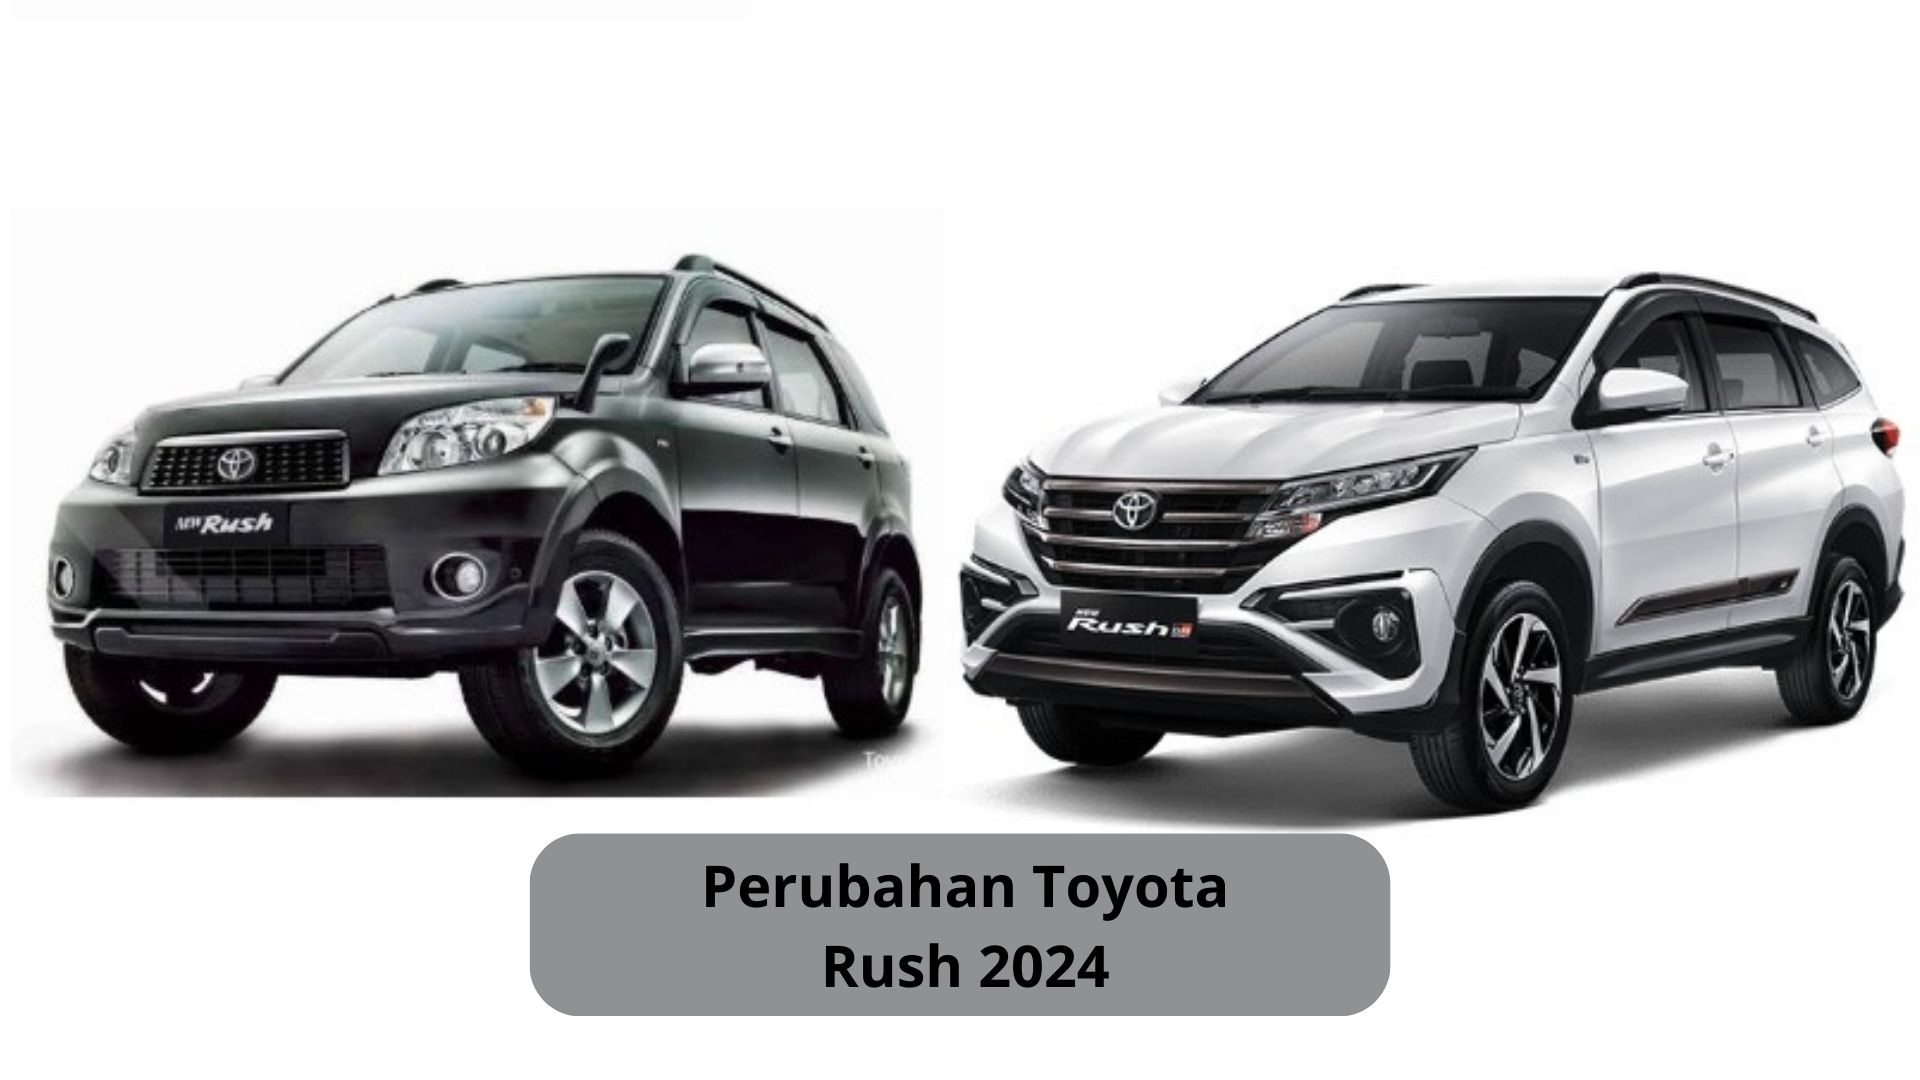 Perubahan Toyota Rush 2024, SUV yang Beran Tawarkan Kabin Lapang untuk Kenyamanan Penumpang